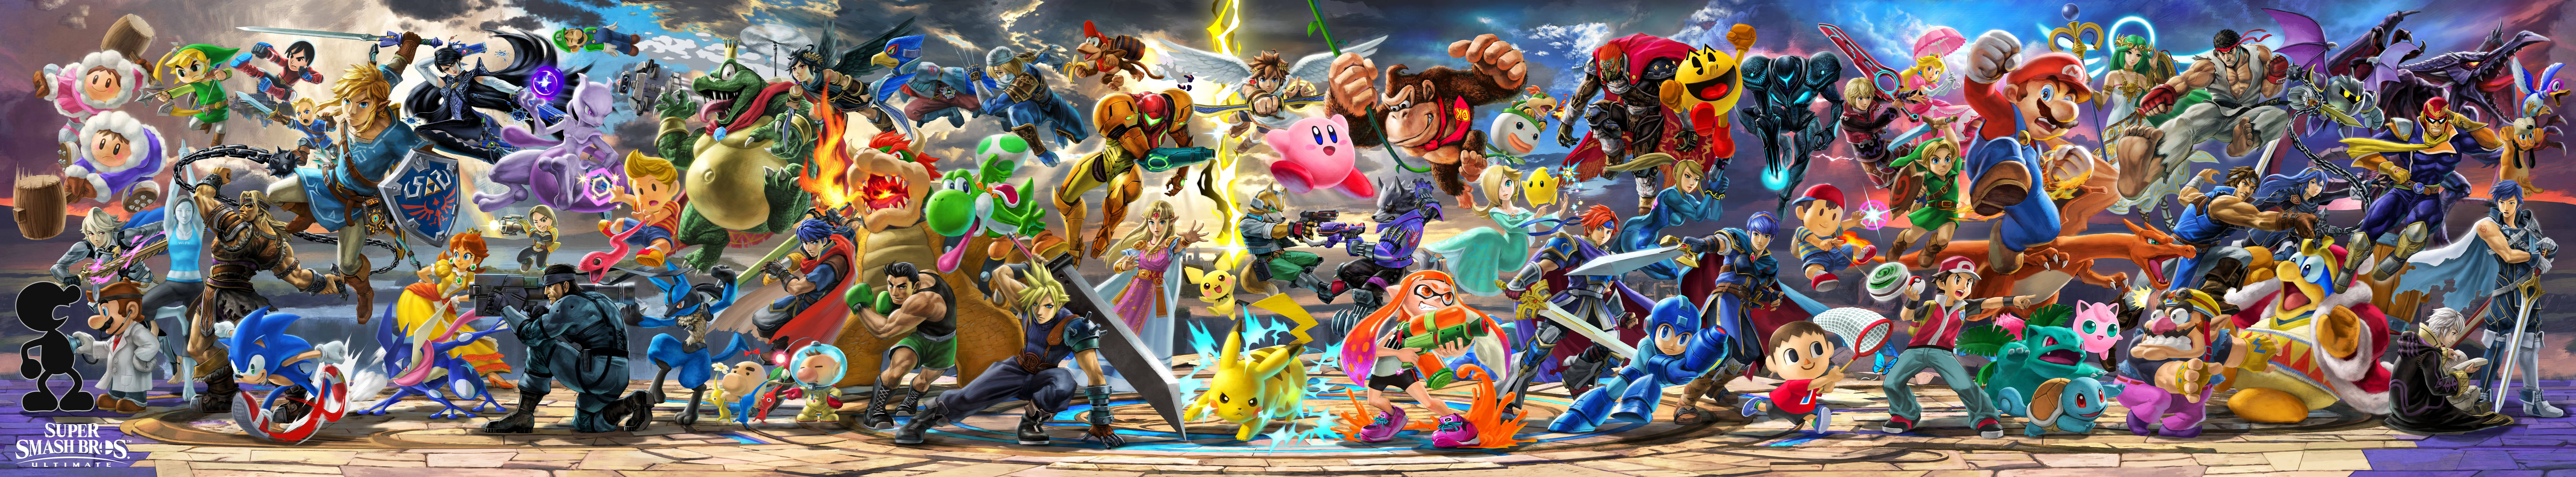 Super Smash Bros Ultimate Wide Banner Background